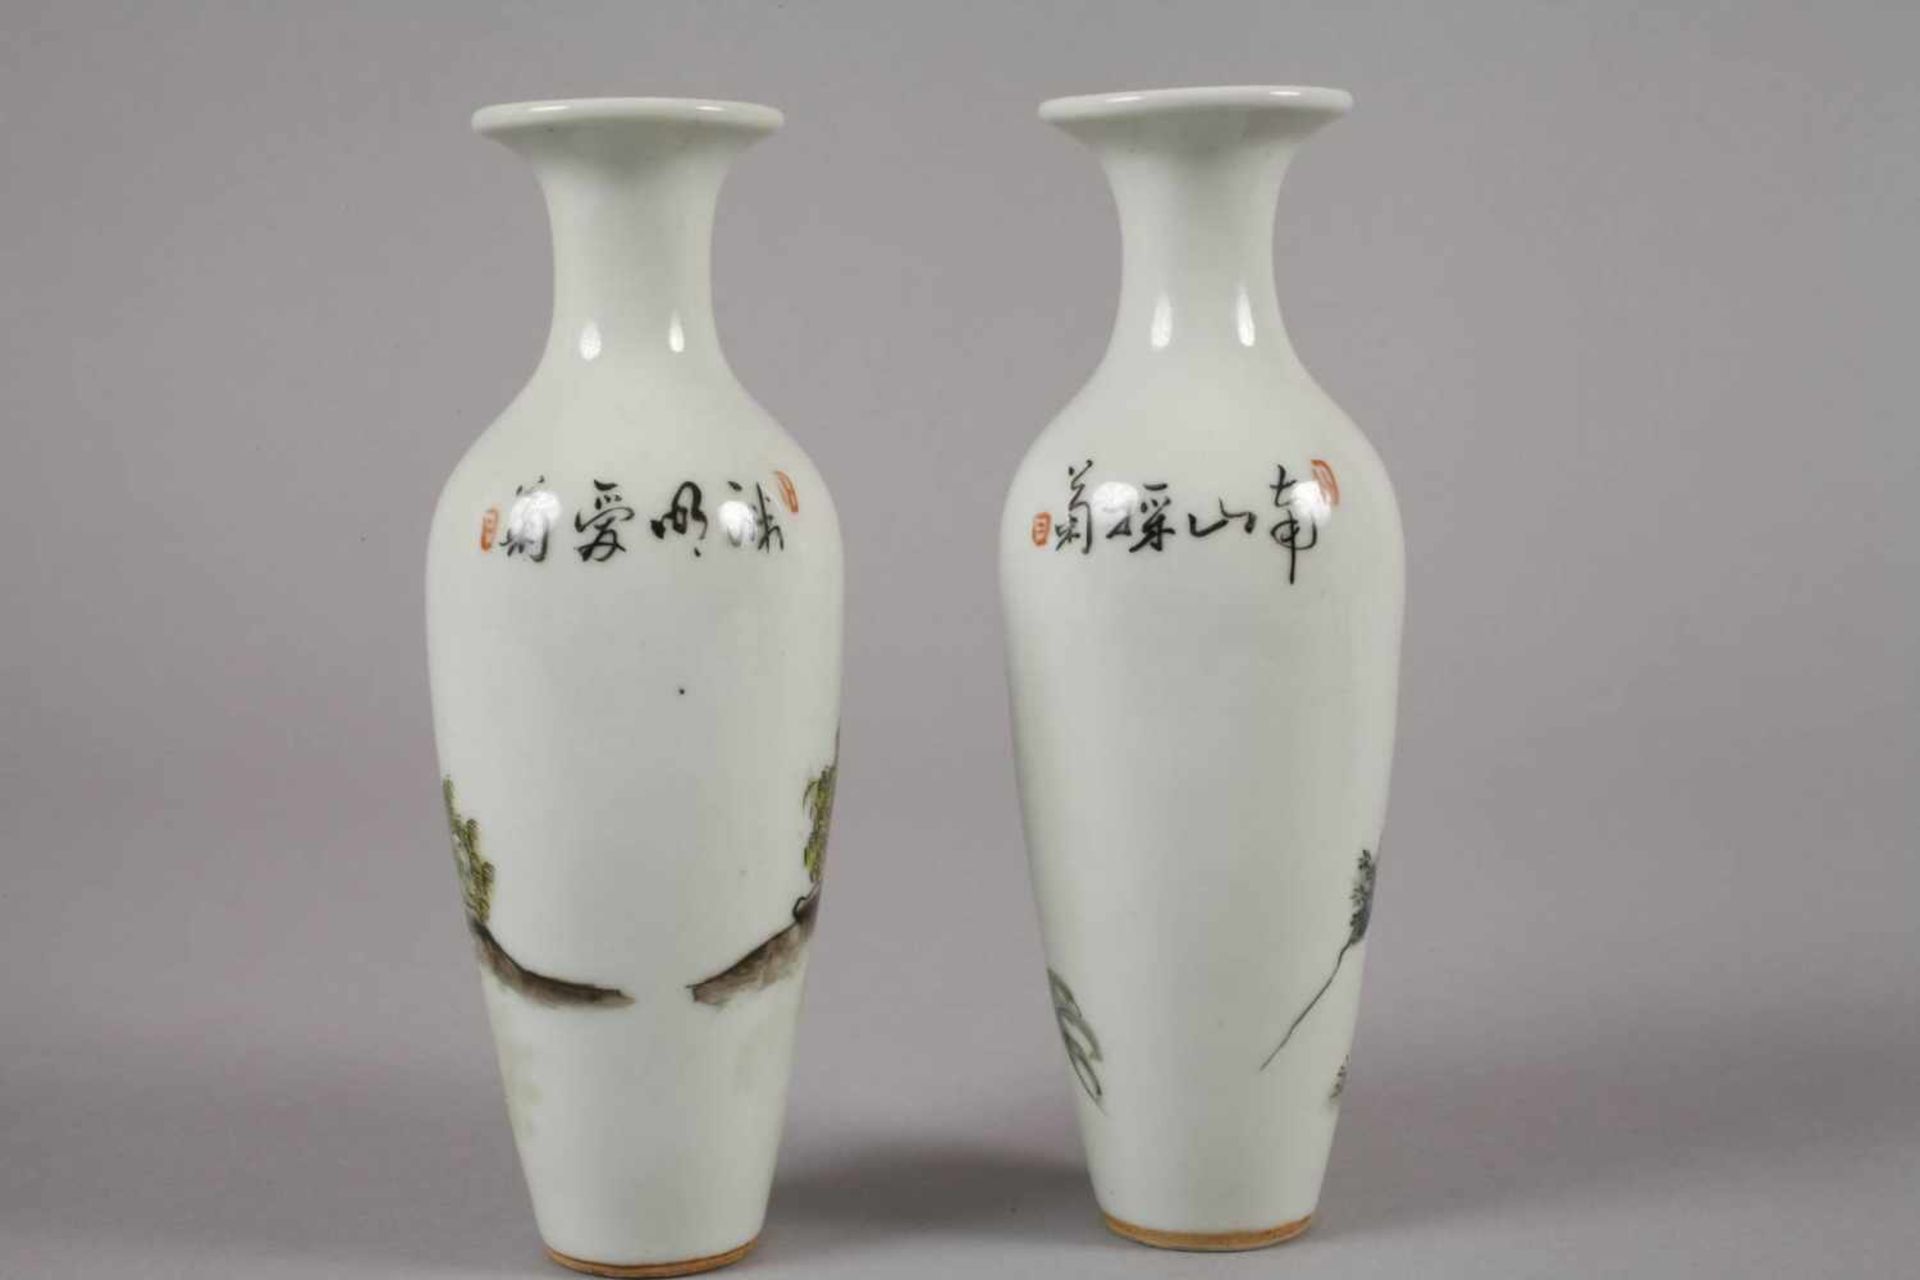 Sechs Vasen China1960er bis 1970er Jahre, gemarkt und signiert, Weißporzellan in polychromer - Bild 5 aus 12